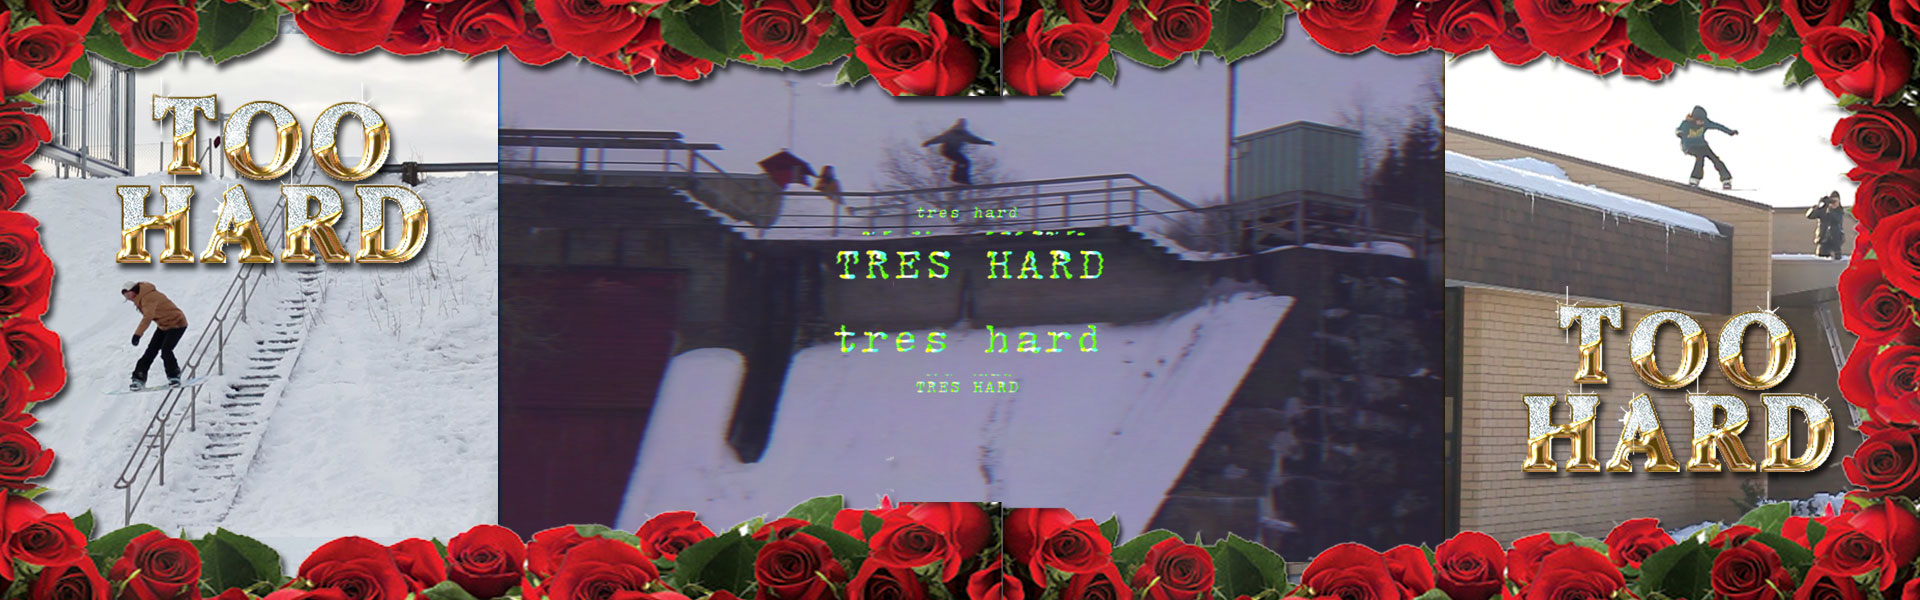 Too Hard: Tres Hard Teaser